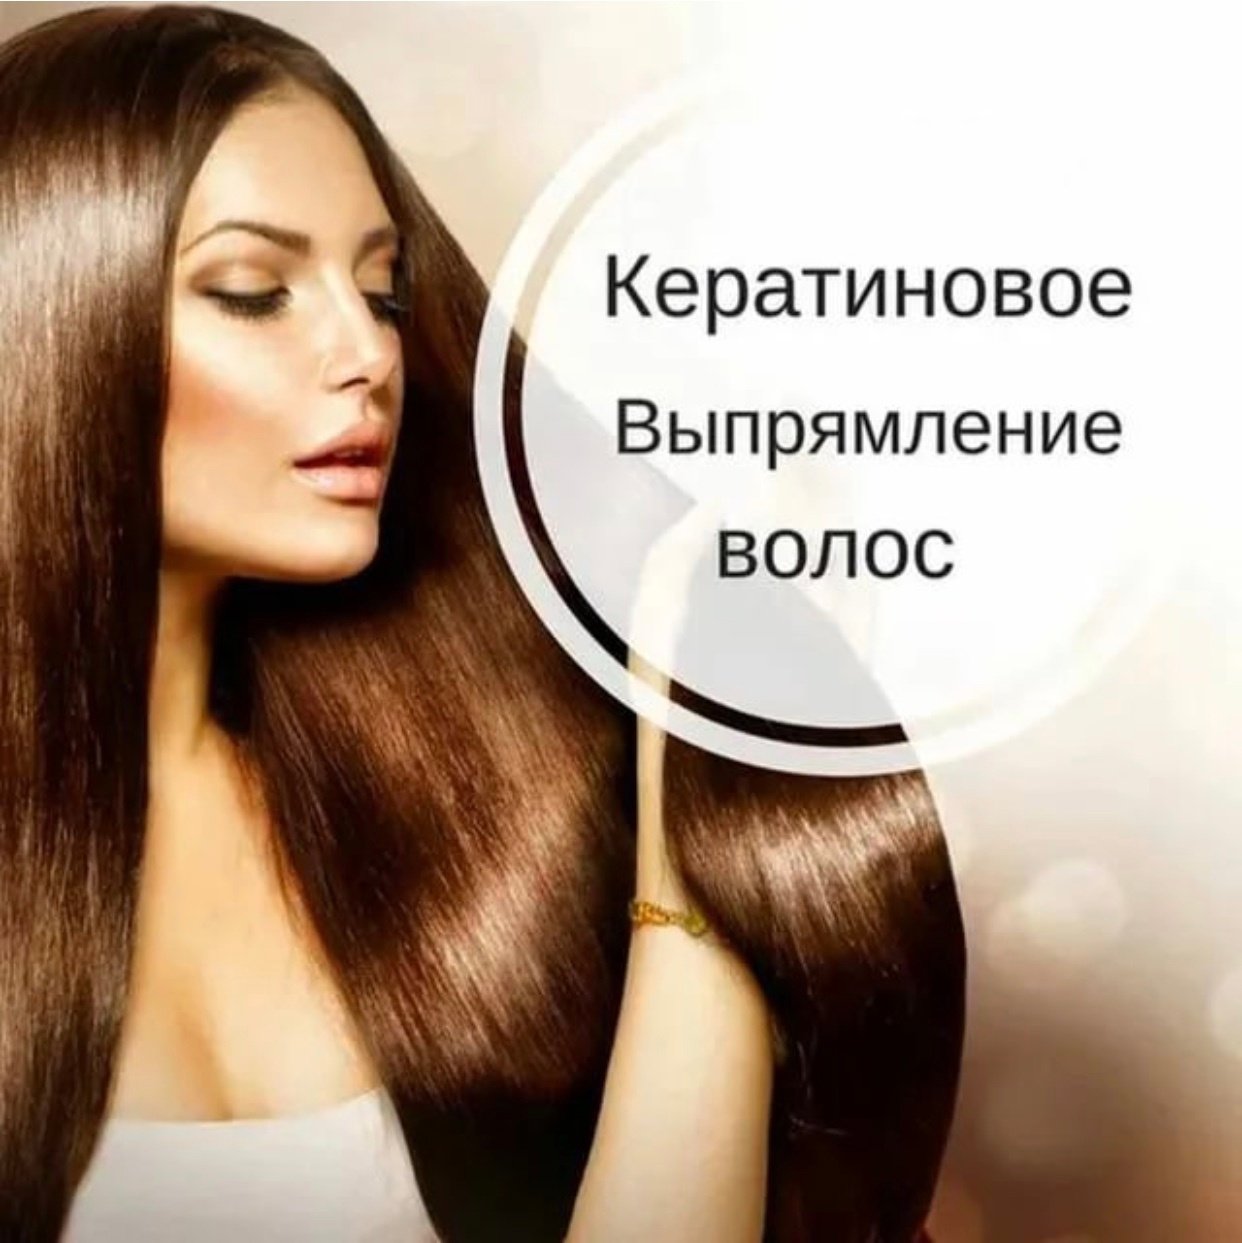 Восстановление волос обучение. Кератиновое выпрямление волос. Реклама кератина и ботокса для волос. Кератиновое выпрямление волос реклама. Реклама кератин и ботокс волос.